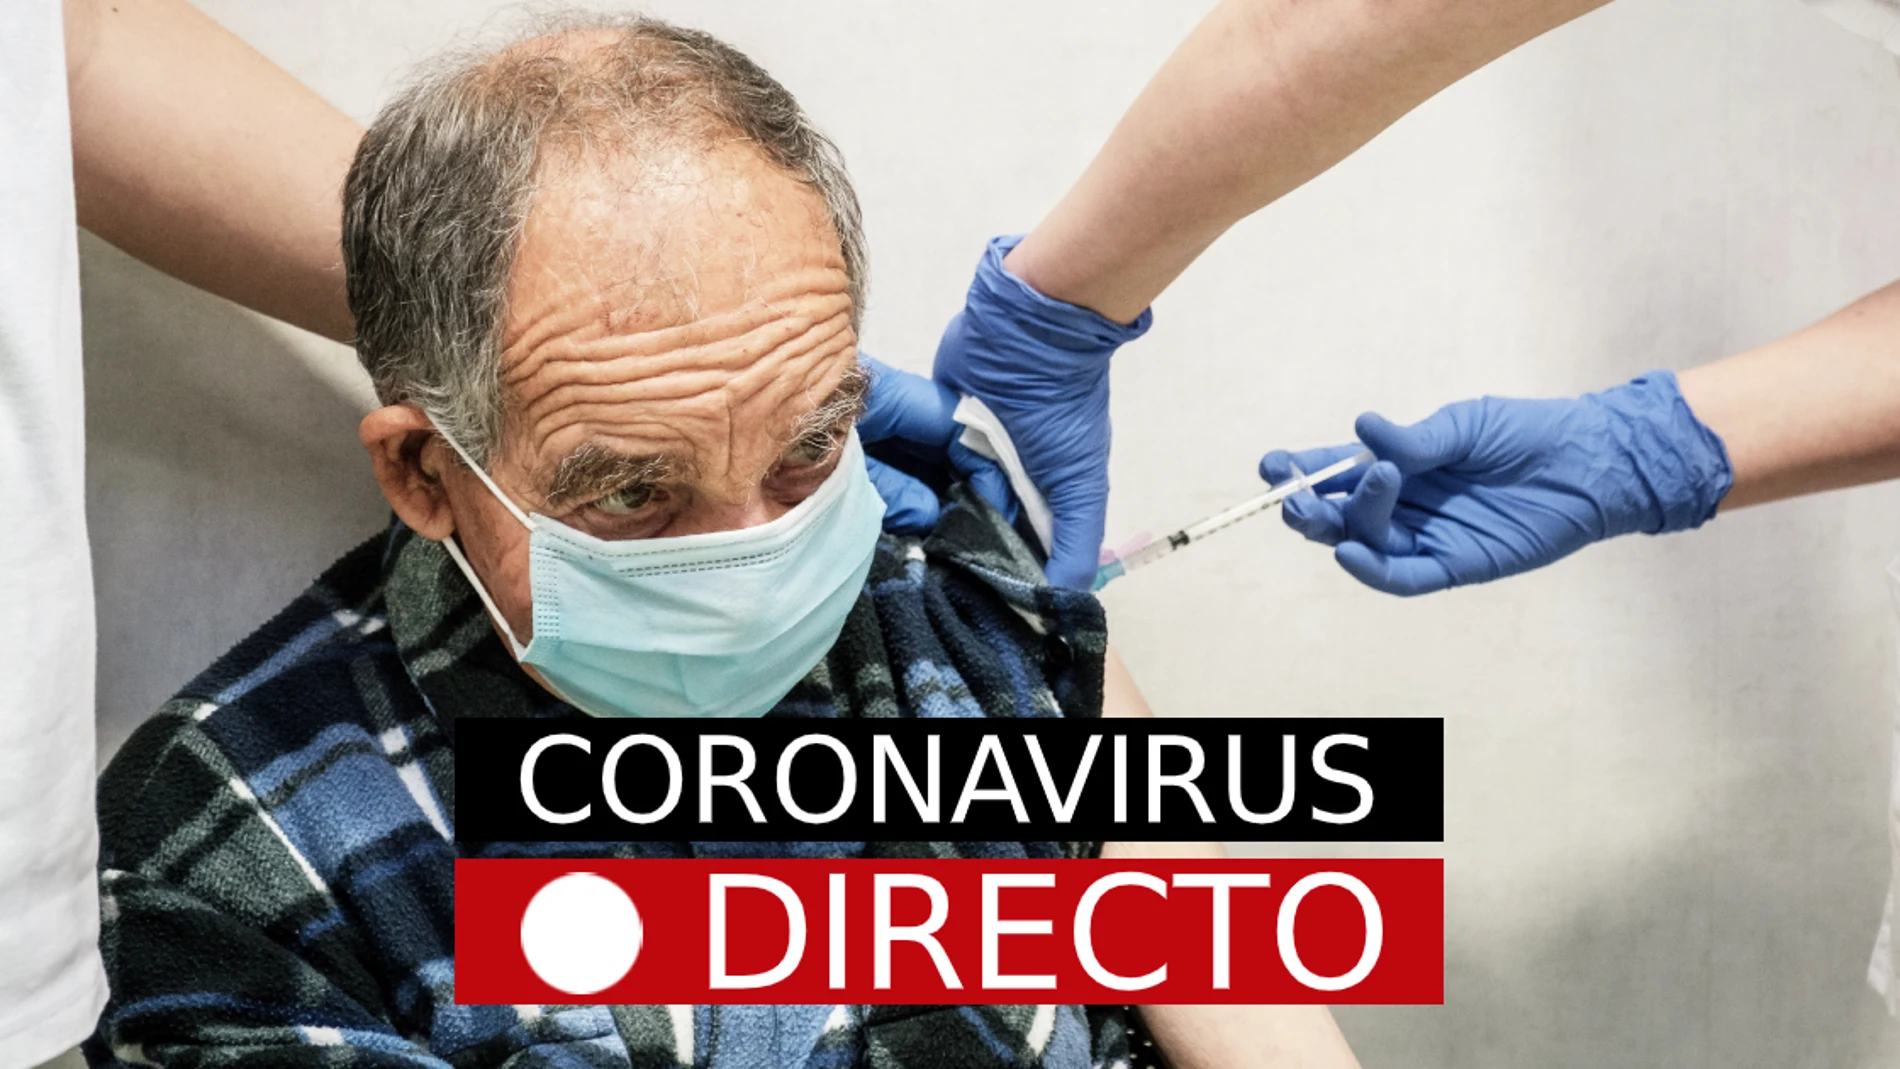 Nuevas restricciones por COVID-19, hoy | Confinamiento perimetral en Madrid y medidas por coronavirus, en directo